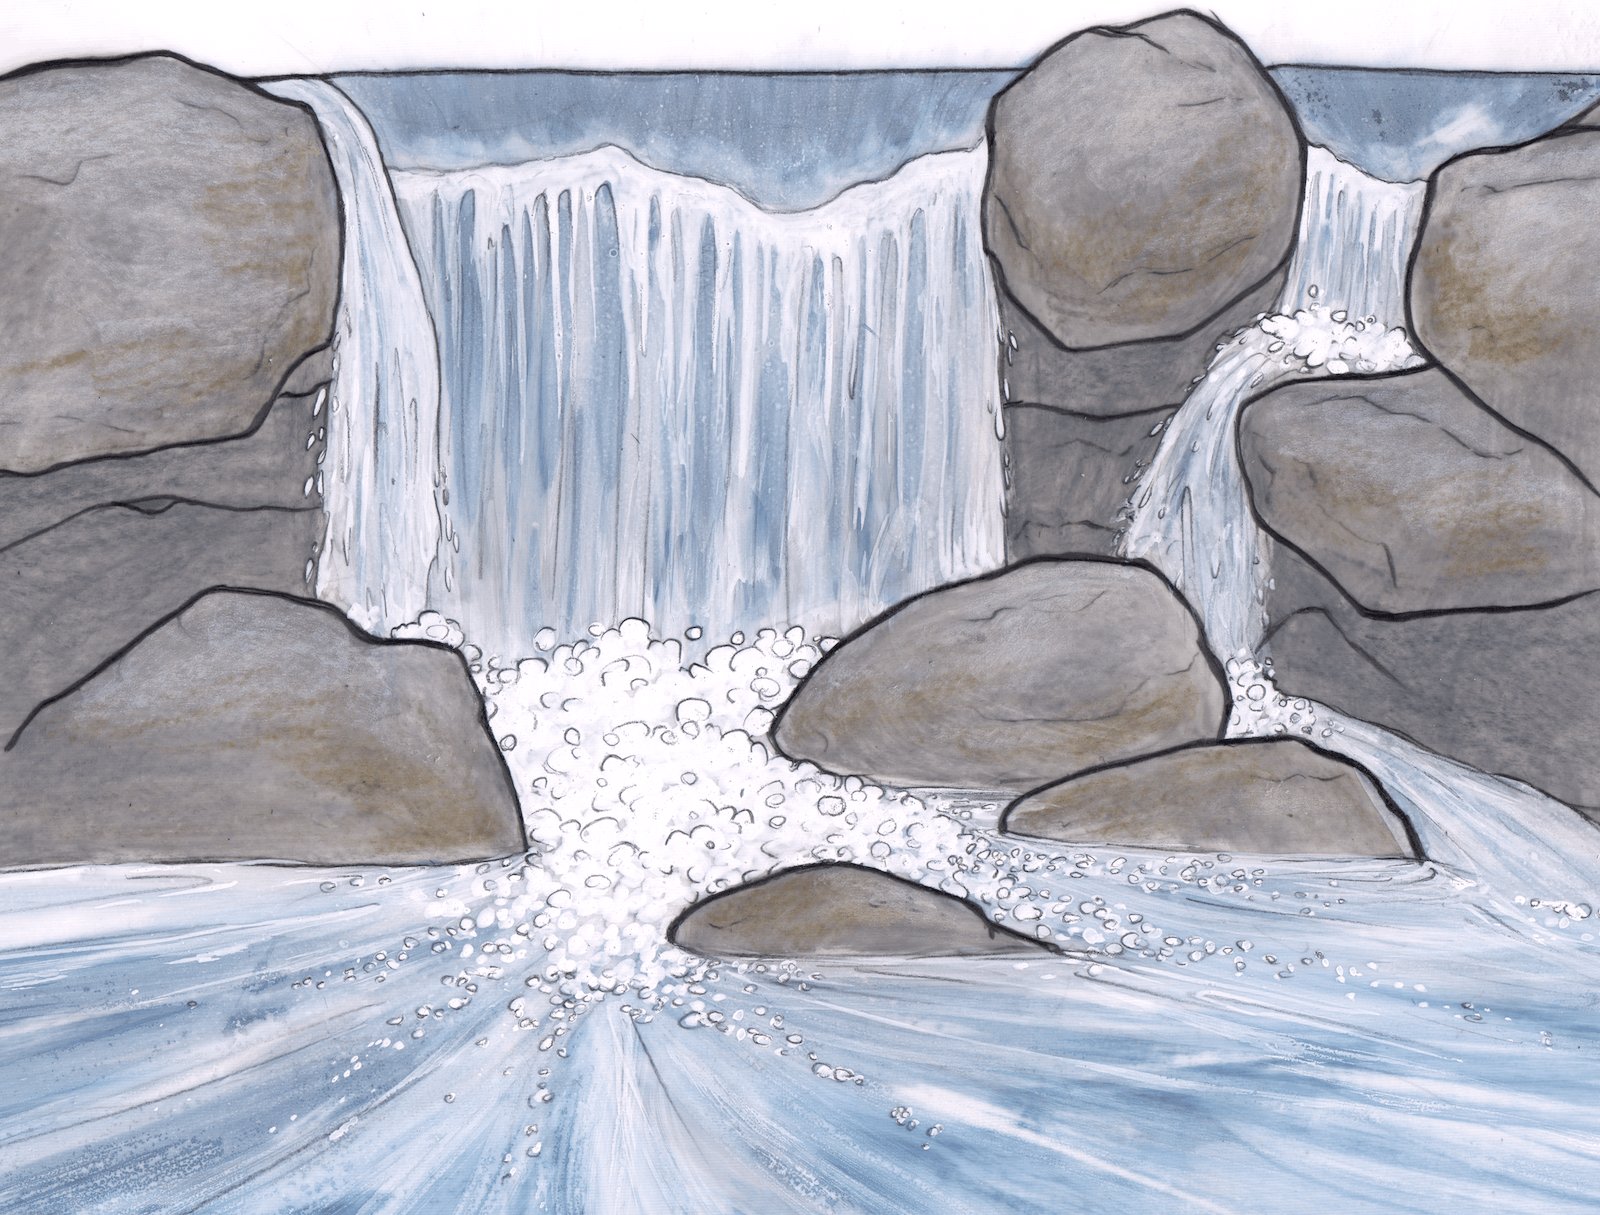 Dessin illustrant l'eau d'une rivière qui s'écoule sur des rochers.